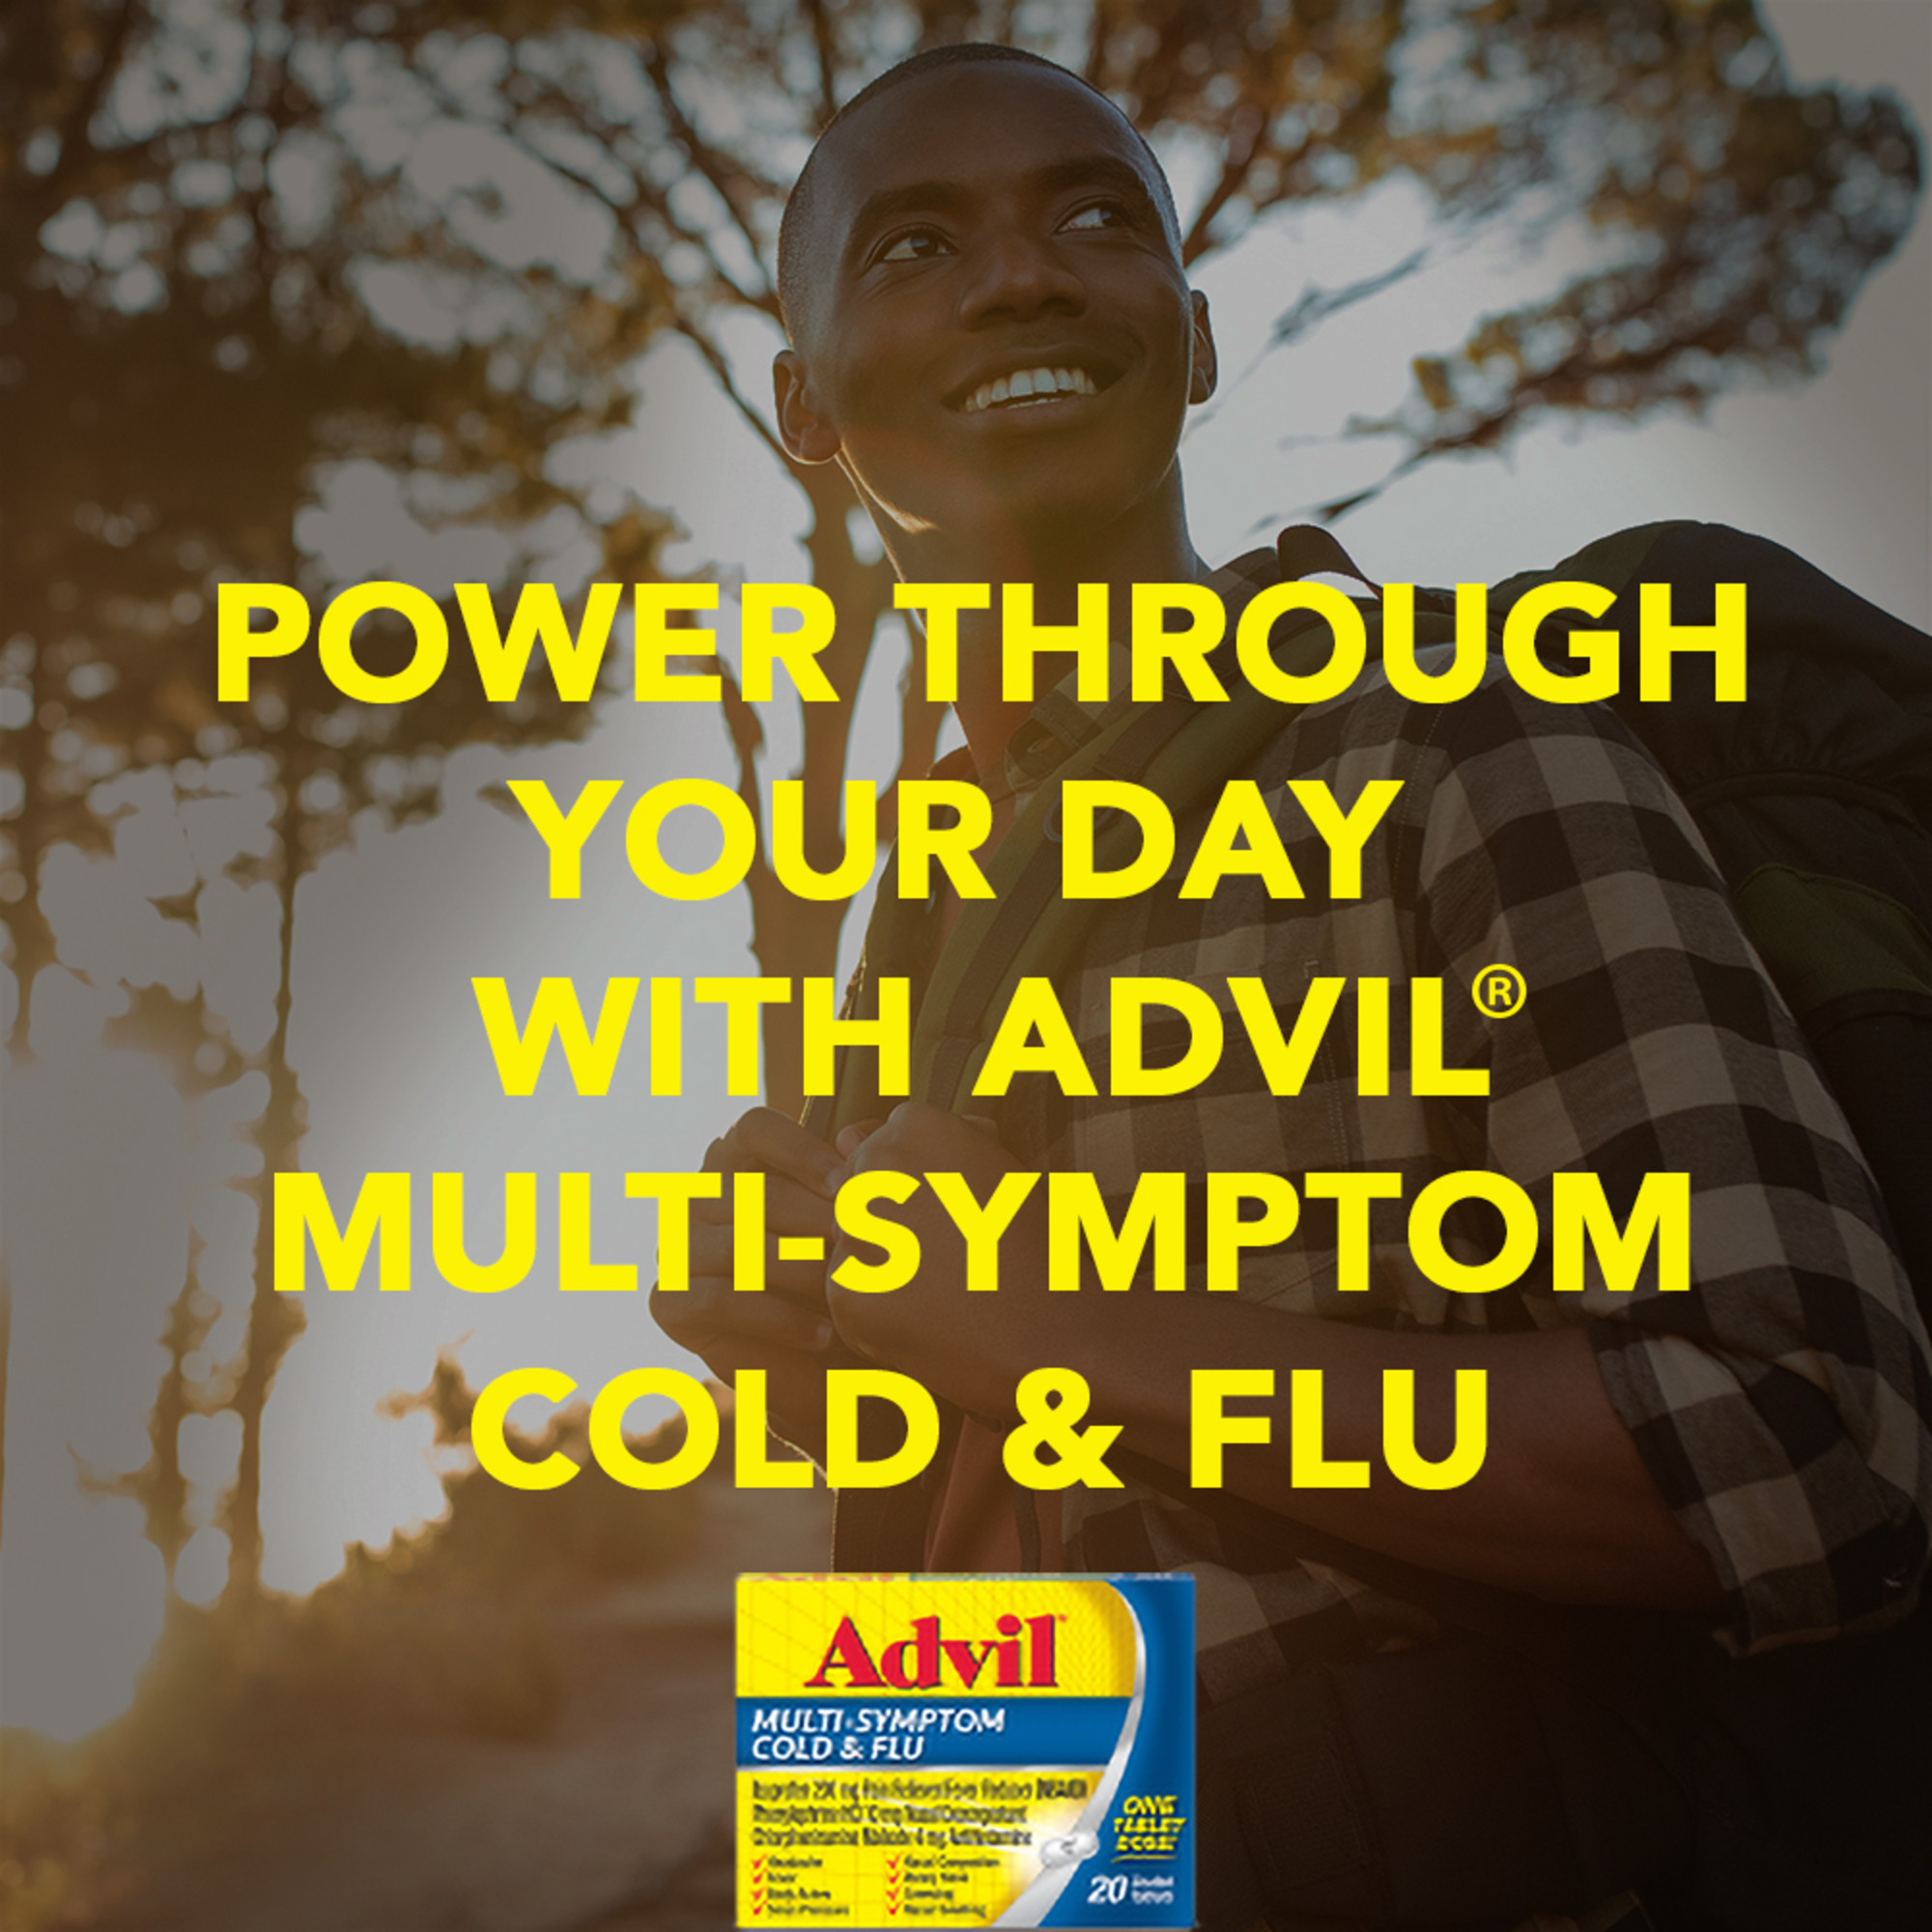 Advil Multi-Symptom Cold and Flu Medicine Fever Reducer Coated Tablets, 20 Count - image 5 of 11